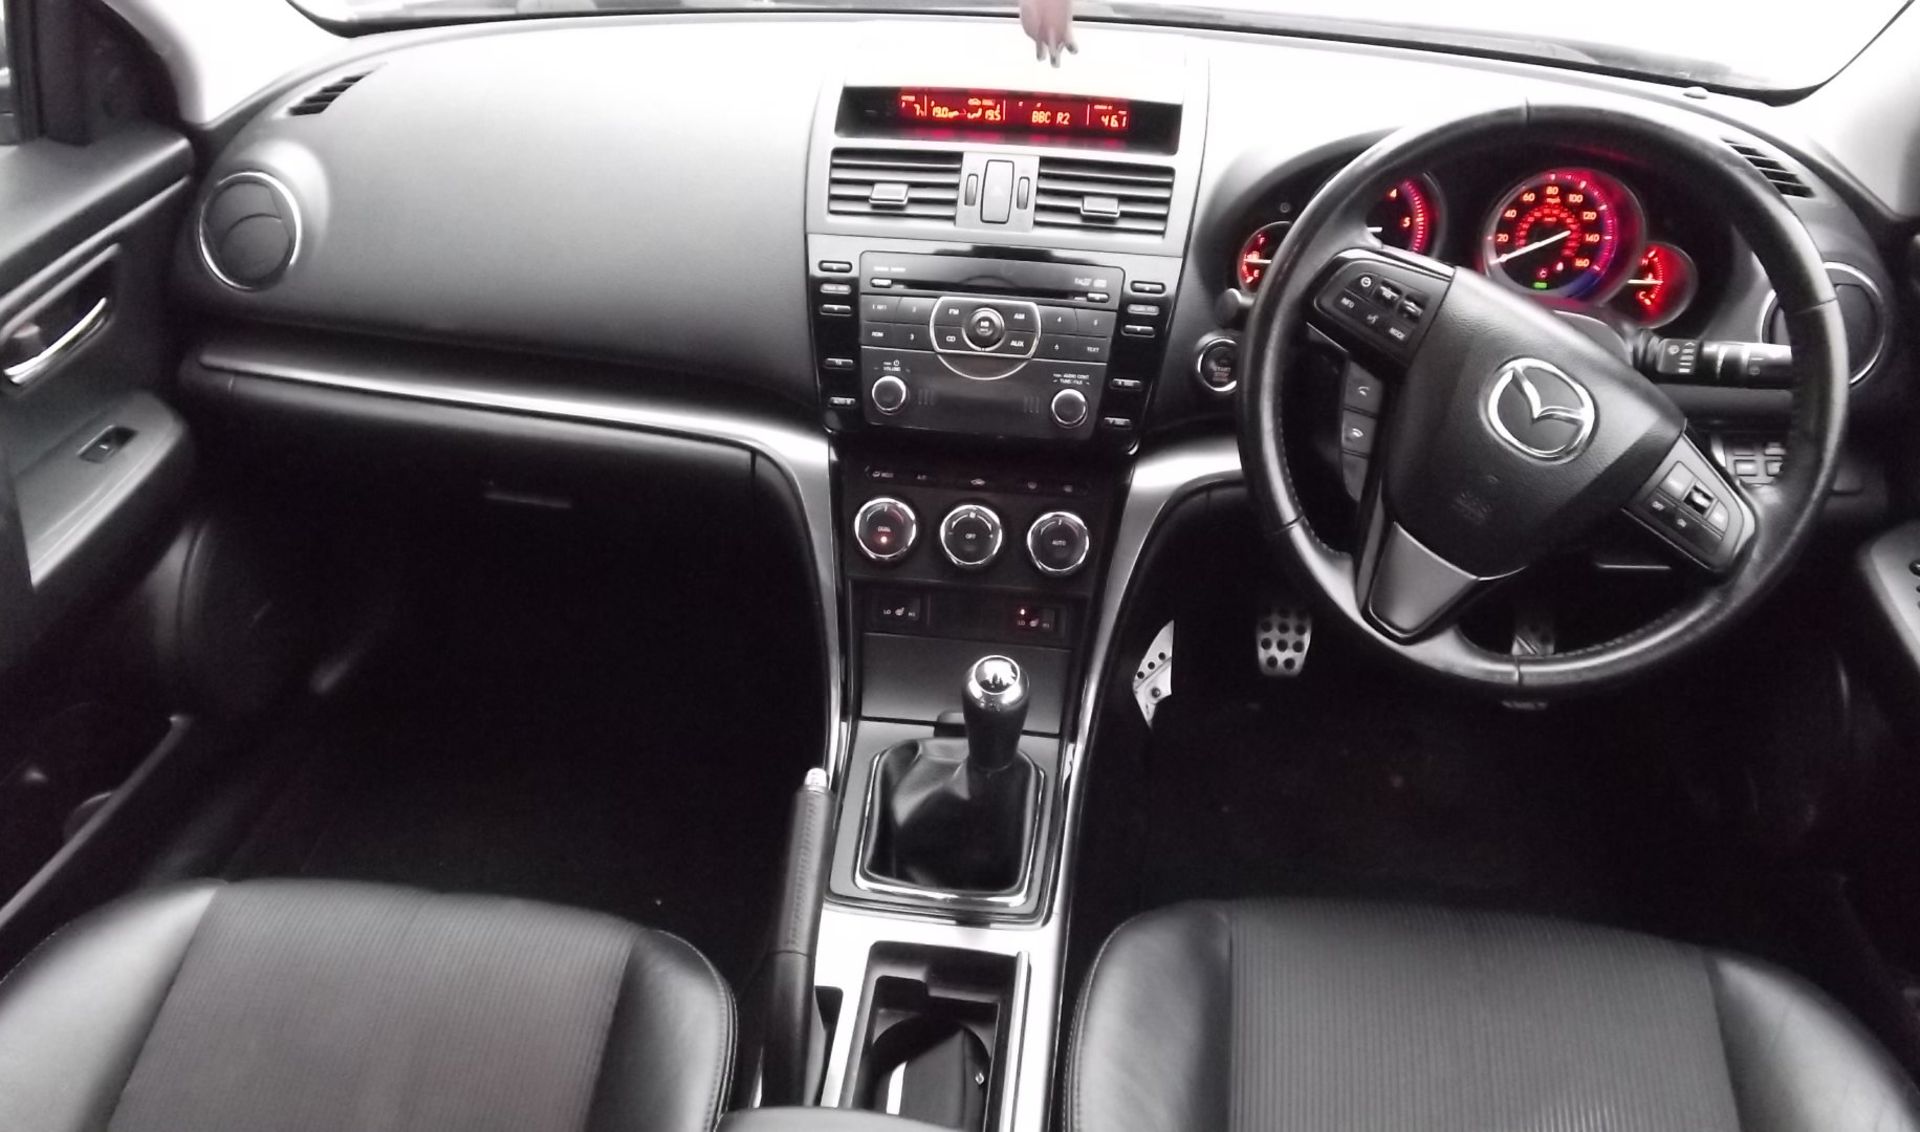 2011 Mazda 6 Sport D 5Dr Hatchback - Image 4 of 17